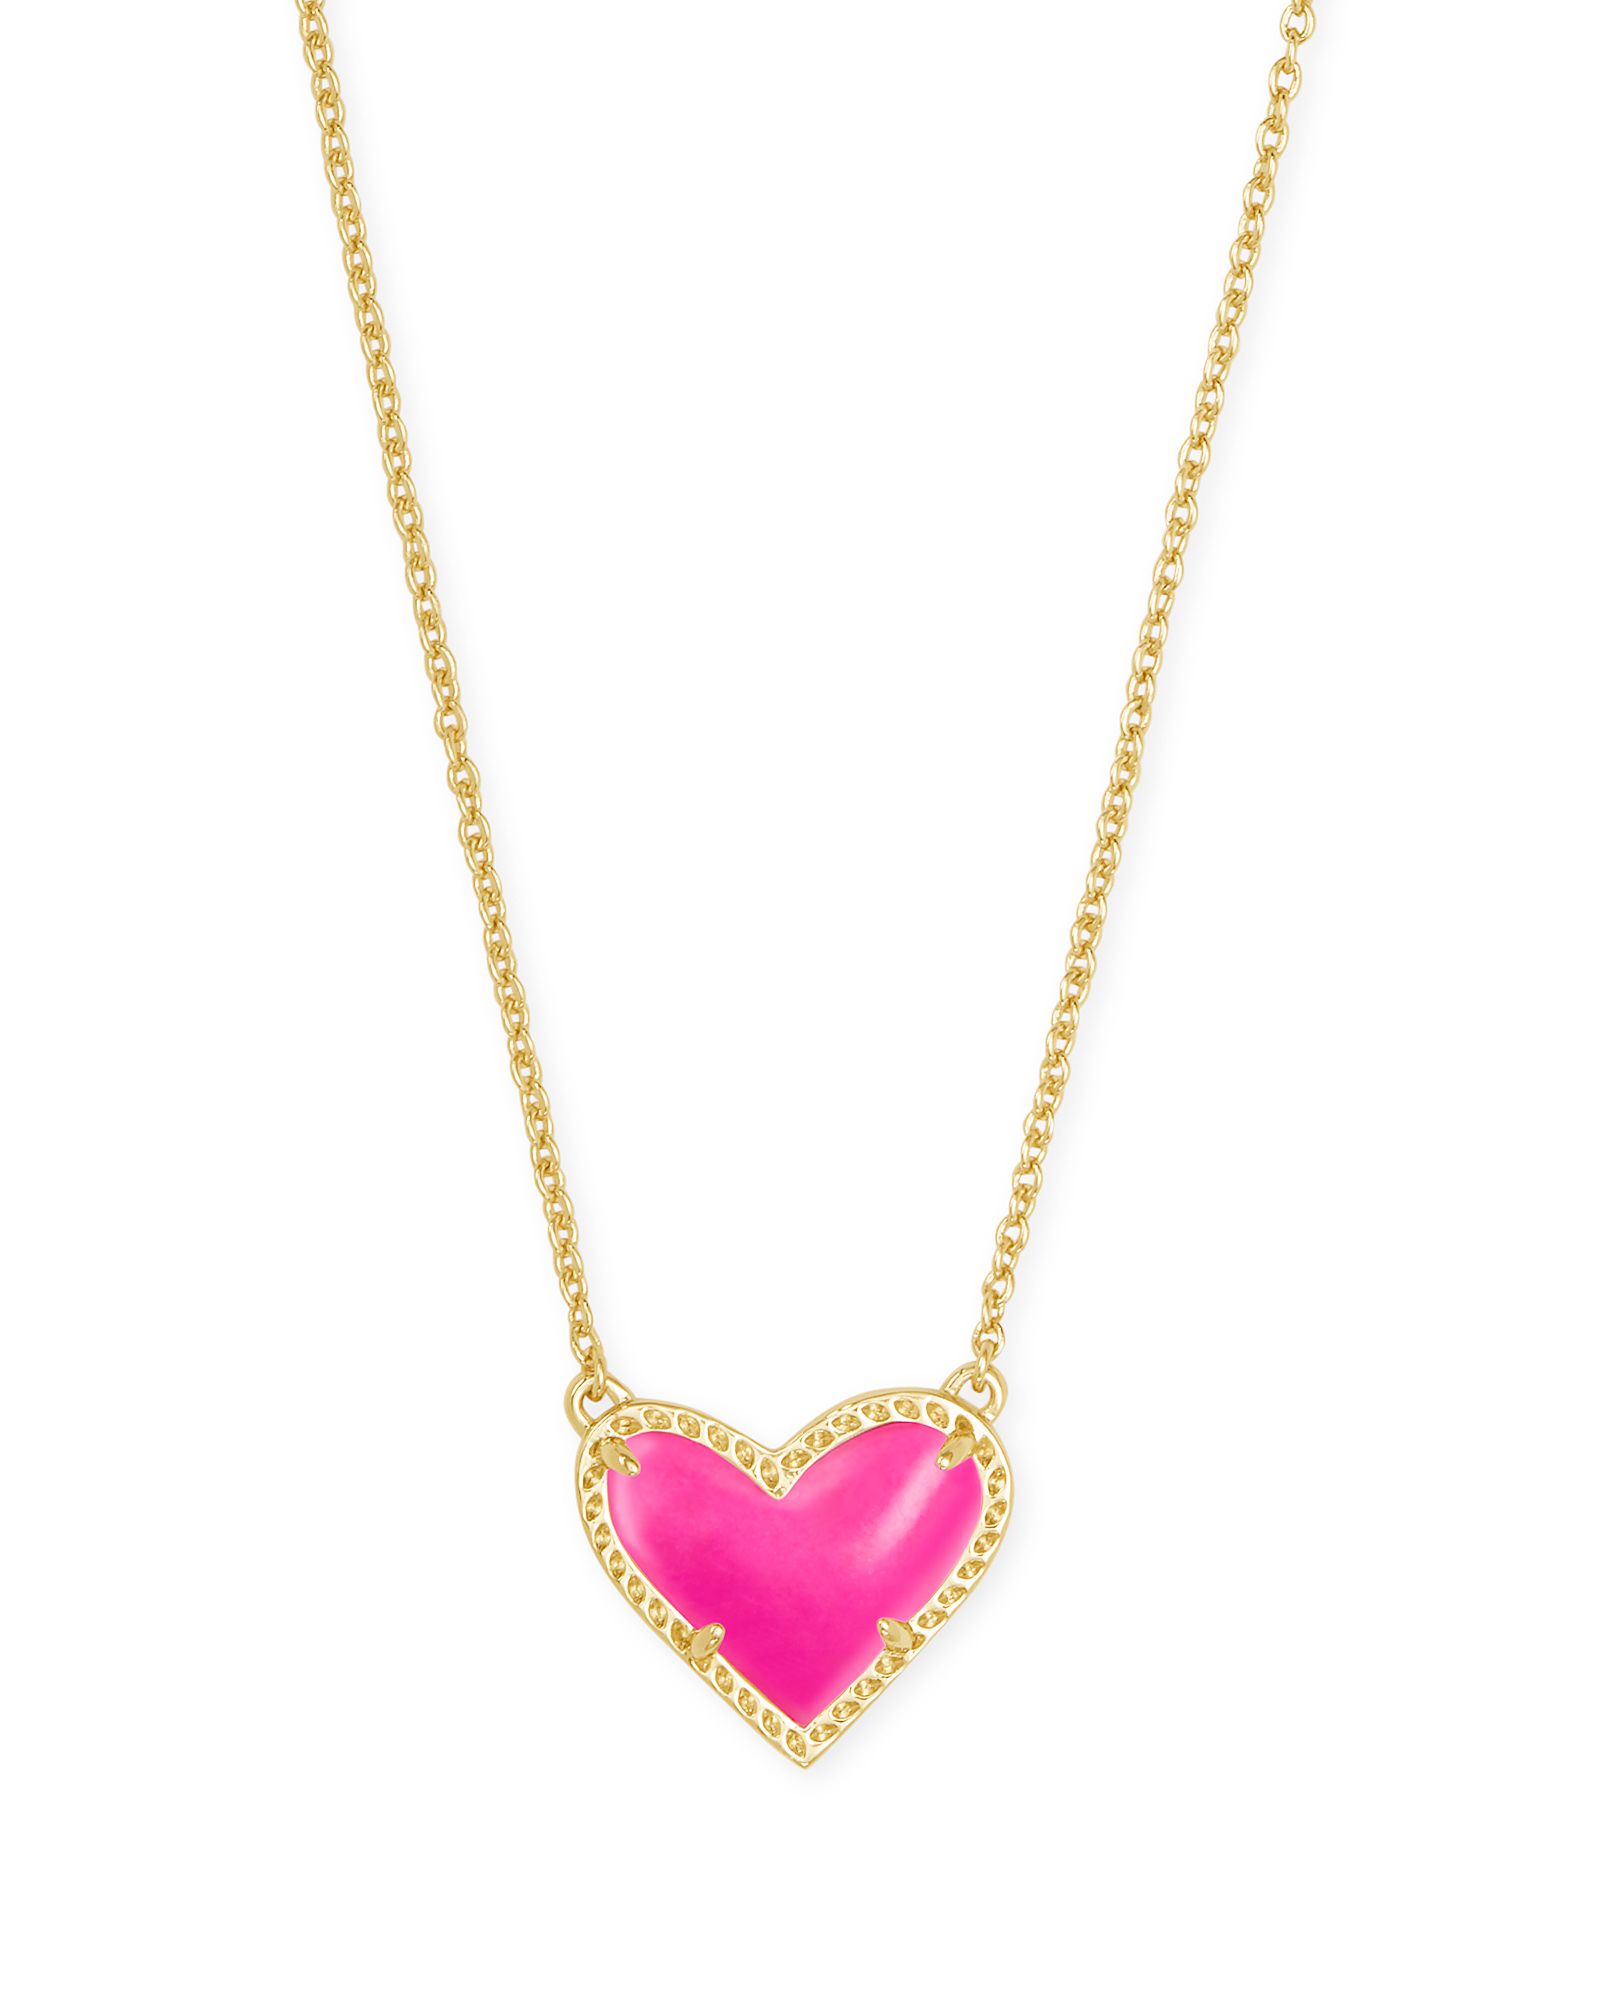 Ari Heart Gold Pendant Necklace in Magenta Magnesite | Kendra Scott